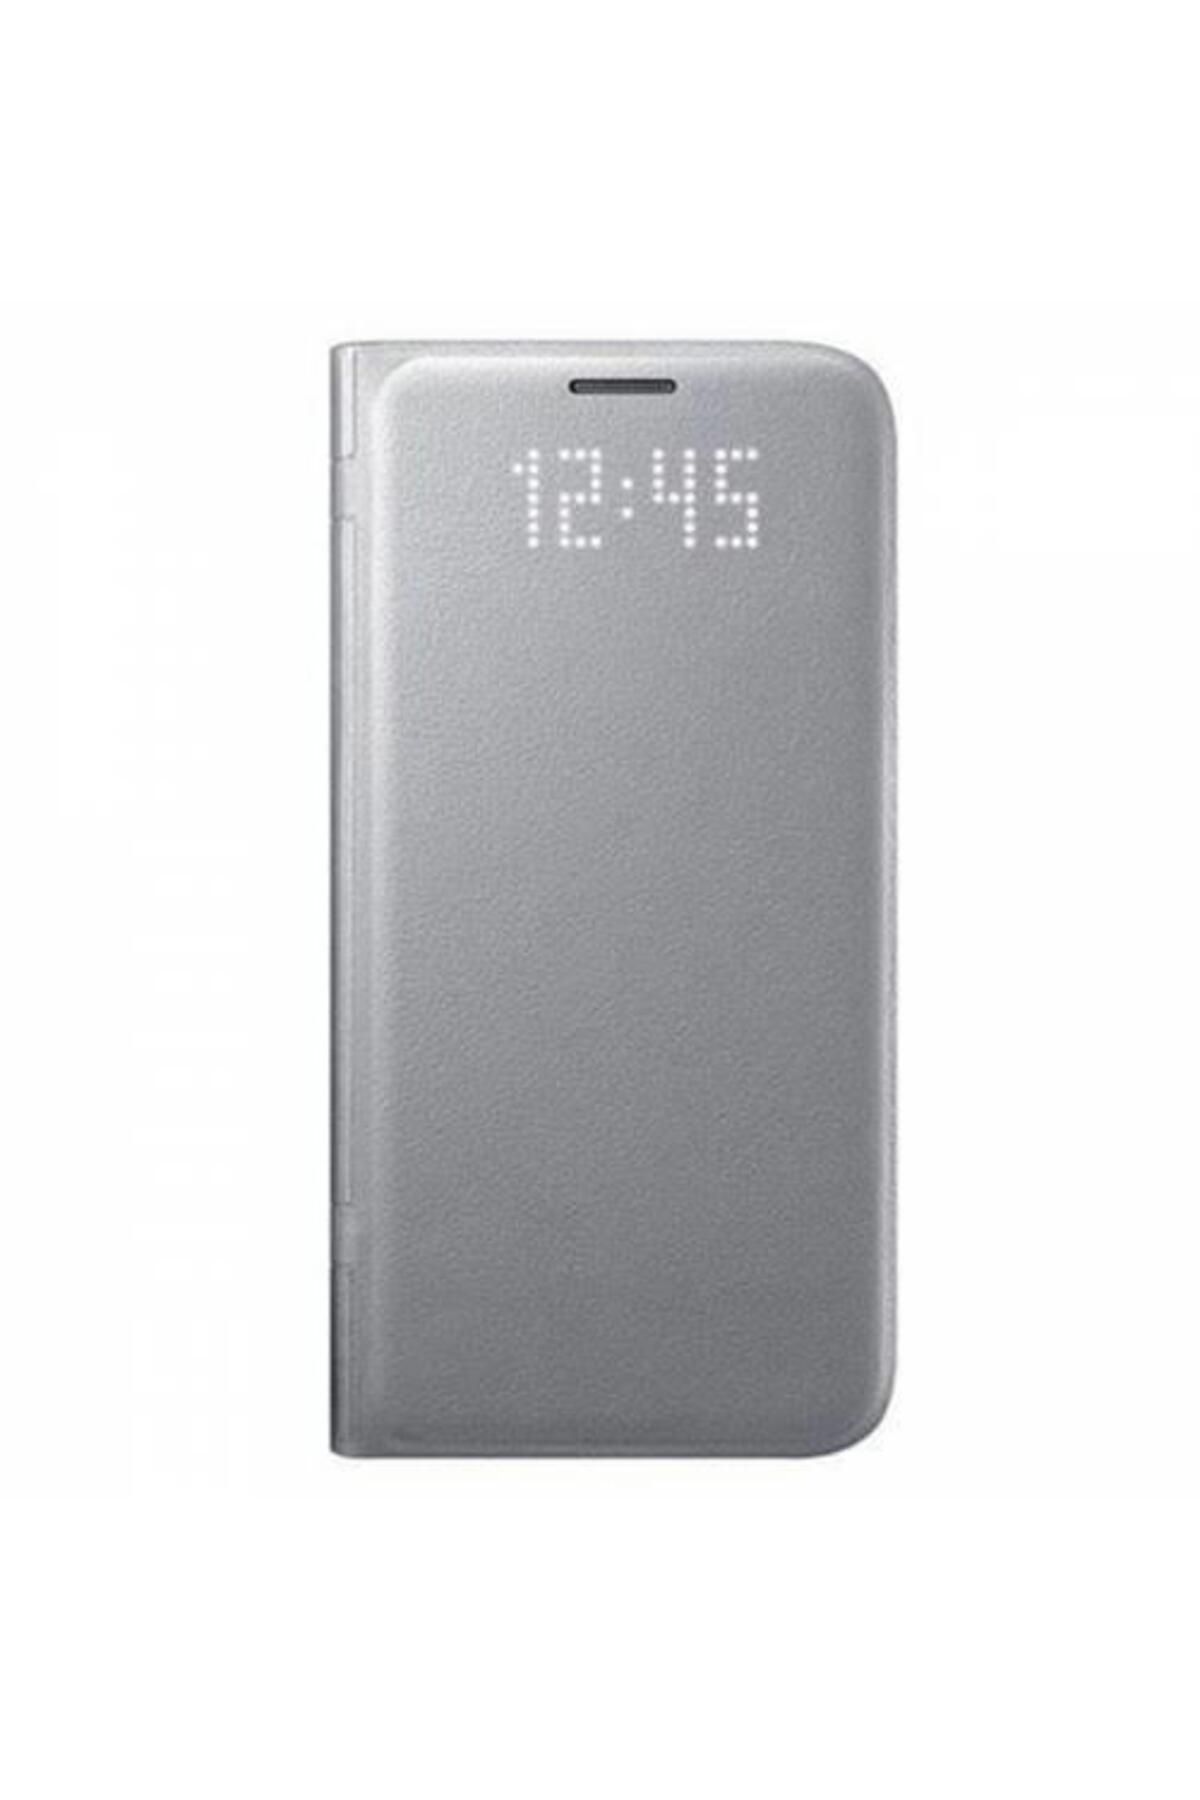 Samsung Galaxy S7 Led View Fonksiyonel Kılıf Gümüş Ef-ng930psegww